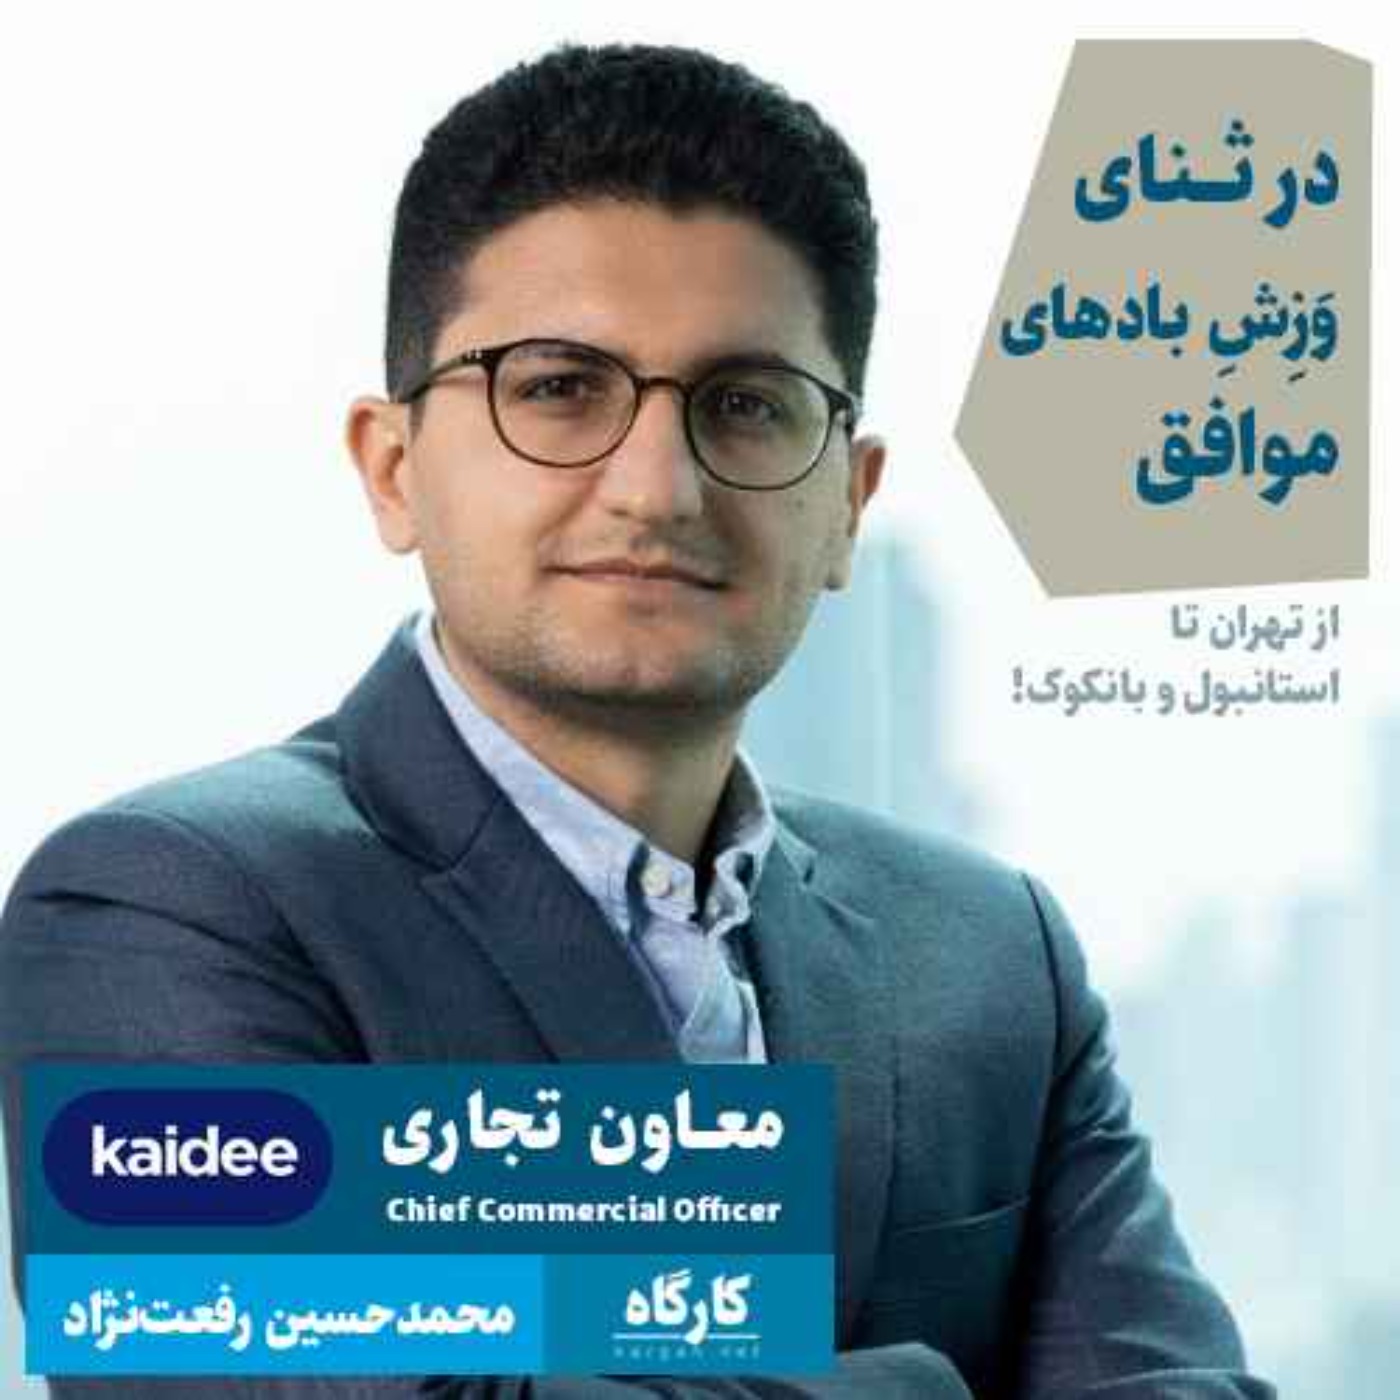 محمدحسین رفعت‌نژاد | مدیرعامل سابق آی‌هوم / معاون تجاری کای‌دی | در ثنای وزش بادهای موافق